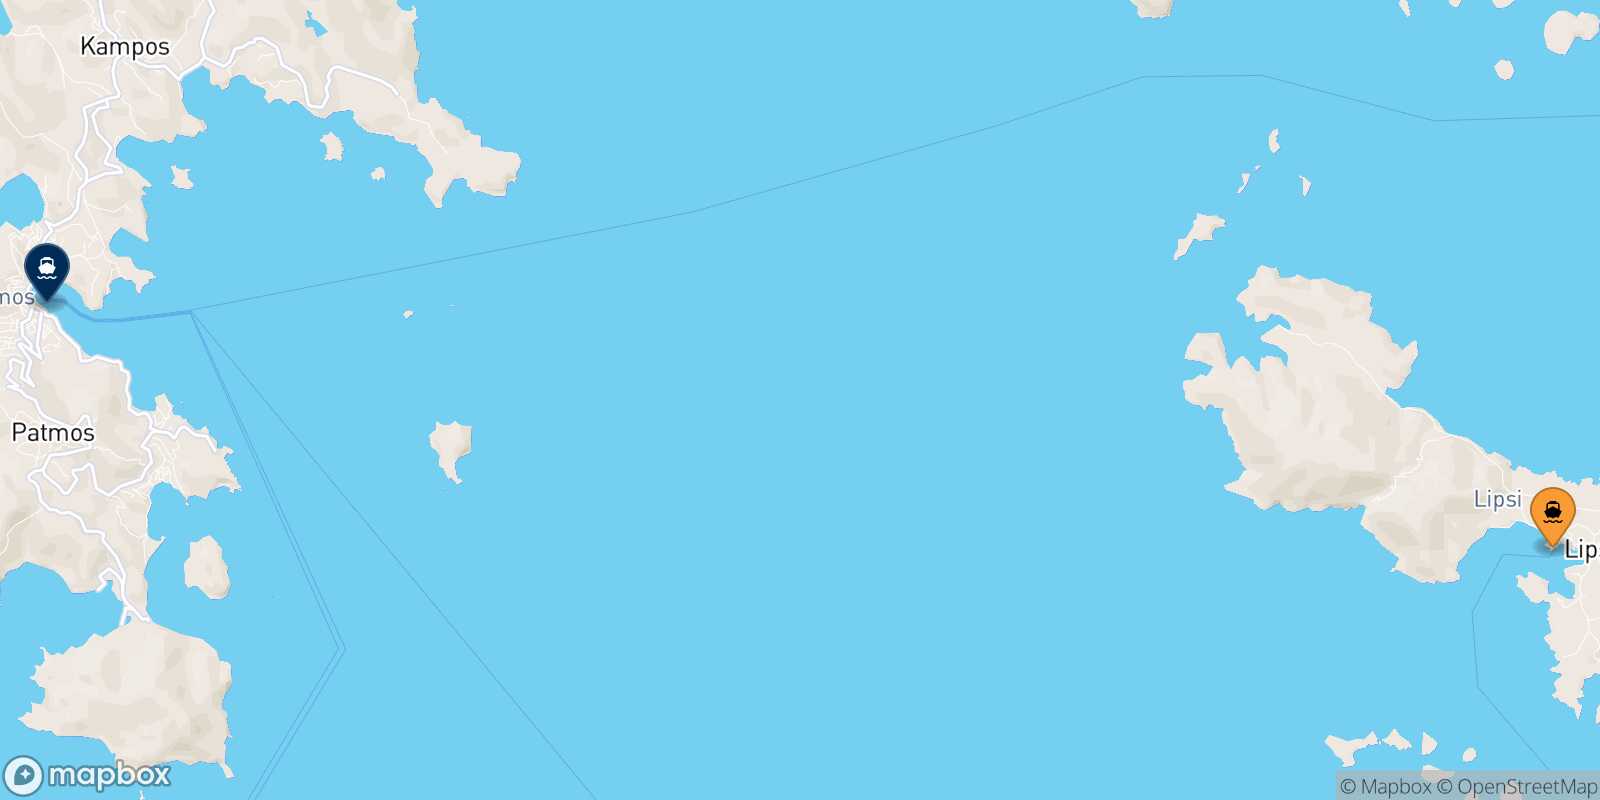 Lipsi Patmos route map